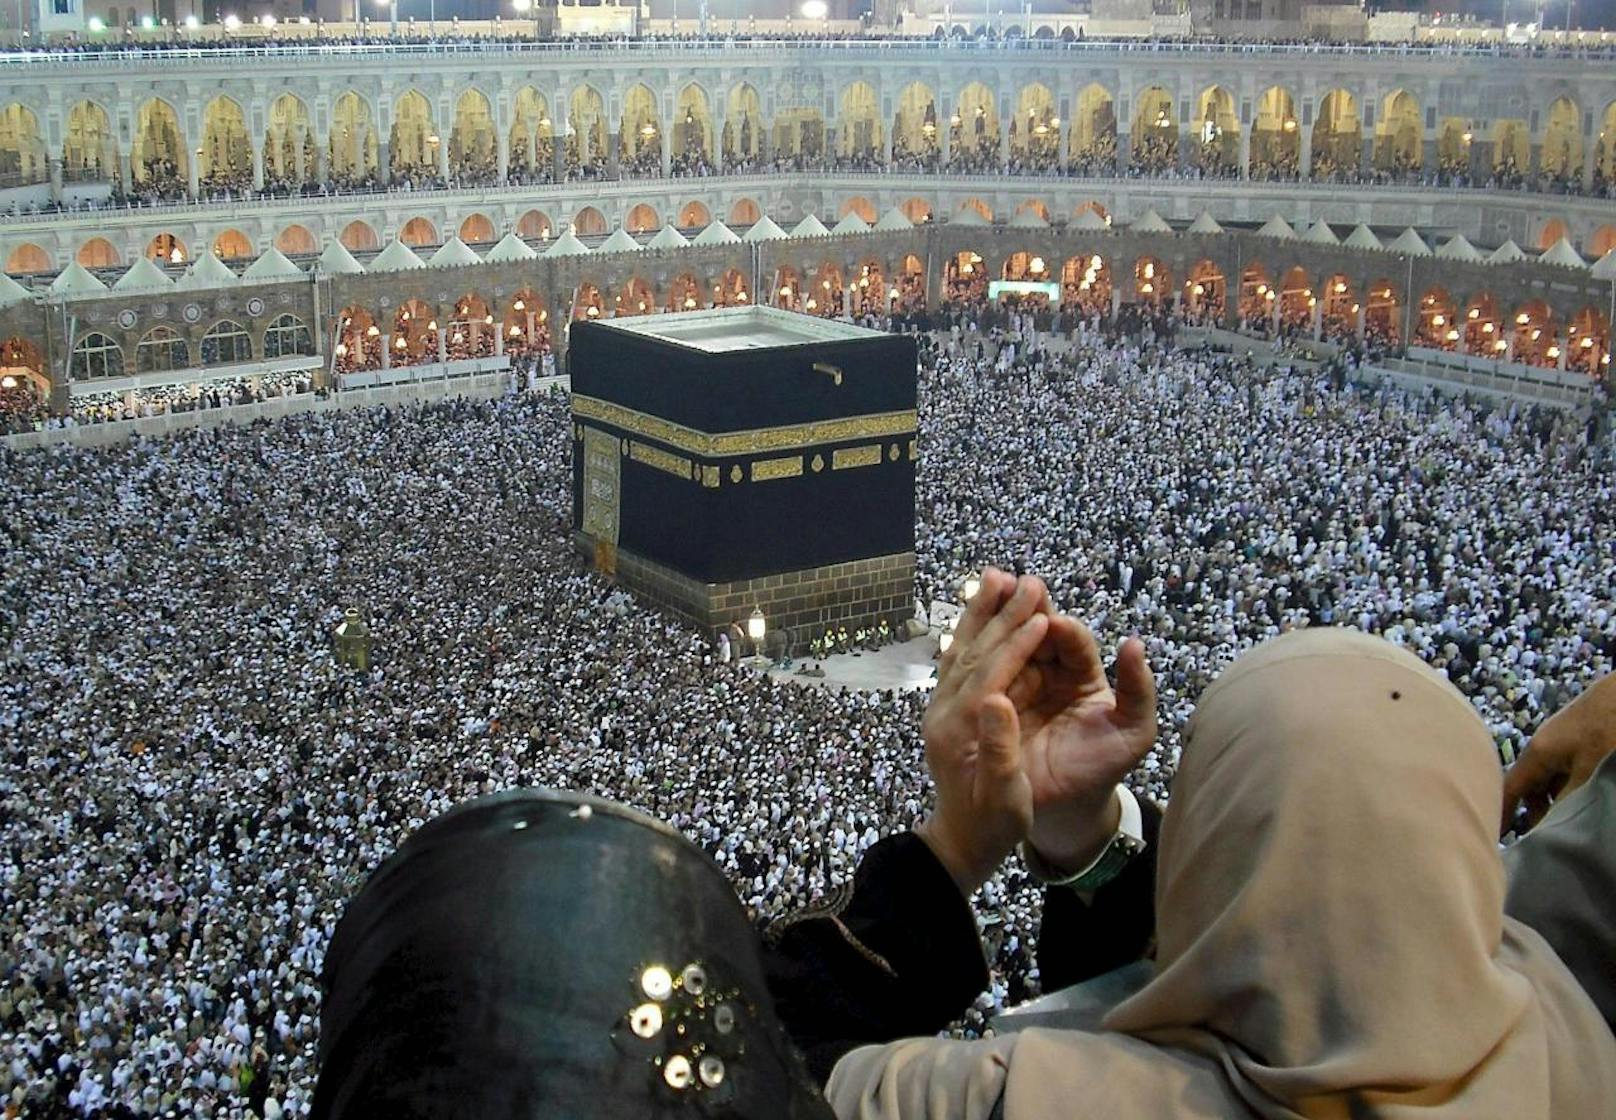 Millionen von Muslimen unternehmen alljährlich die im Islam vorgeschriebene Pilgerfahrt nach Mekka. Der Höhepunkt ist das Umrunden der Kaaba, des heiligsten Ortes im Islam. 